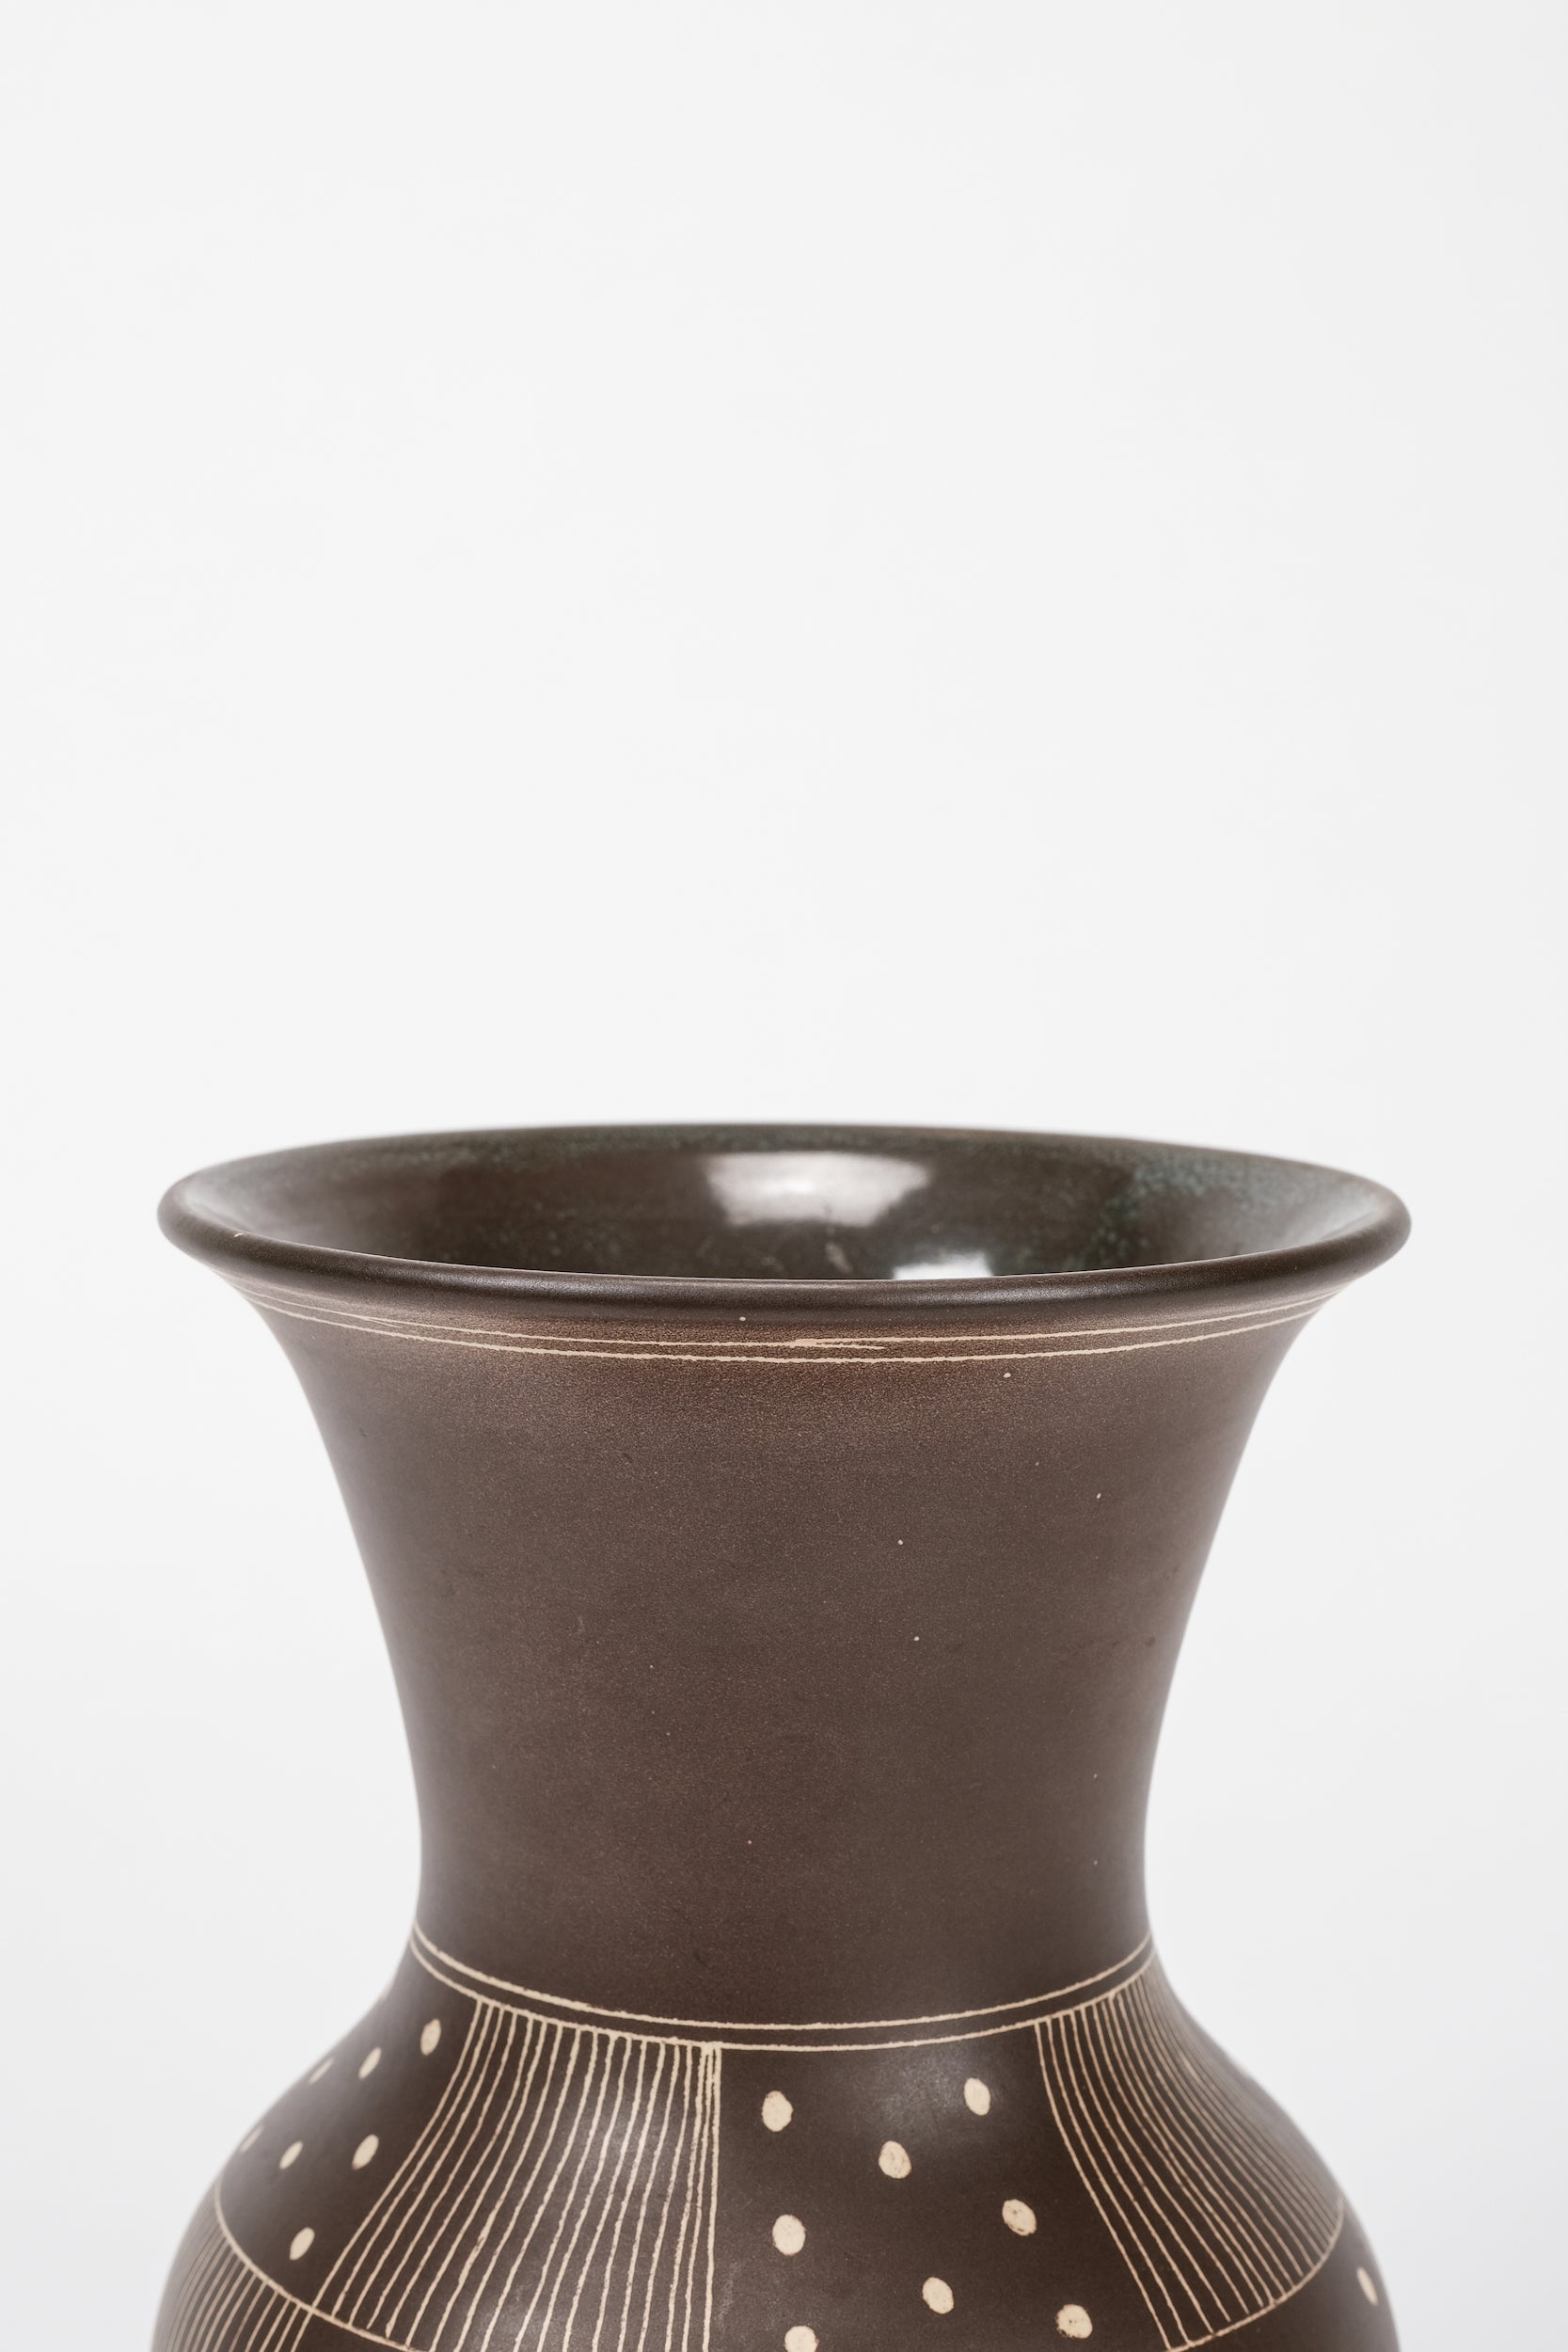 Arnold Zahner, Vase, Rheinfelden Ceramics, Switzerland, 50s